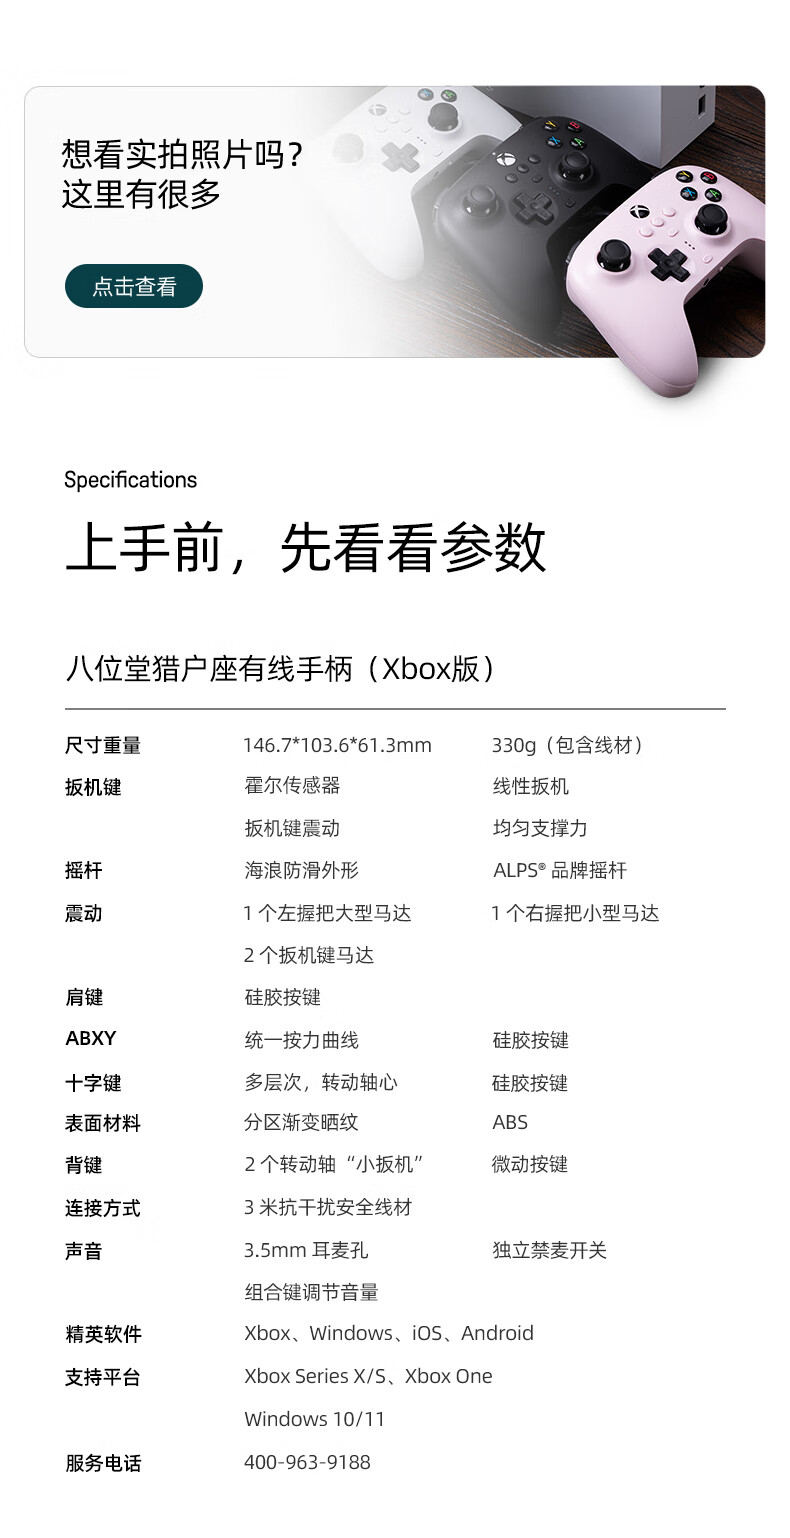 八位堂 8BitDo 猎户座 微软授权有线手柄 Xbox Series PC 电脑Steam游戏手柄 冰雪白